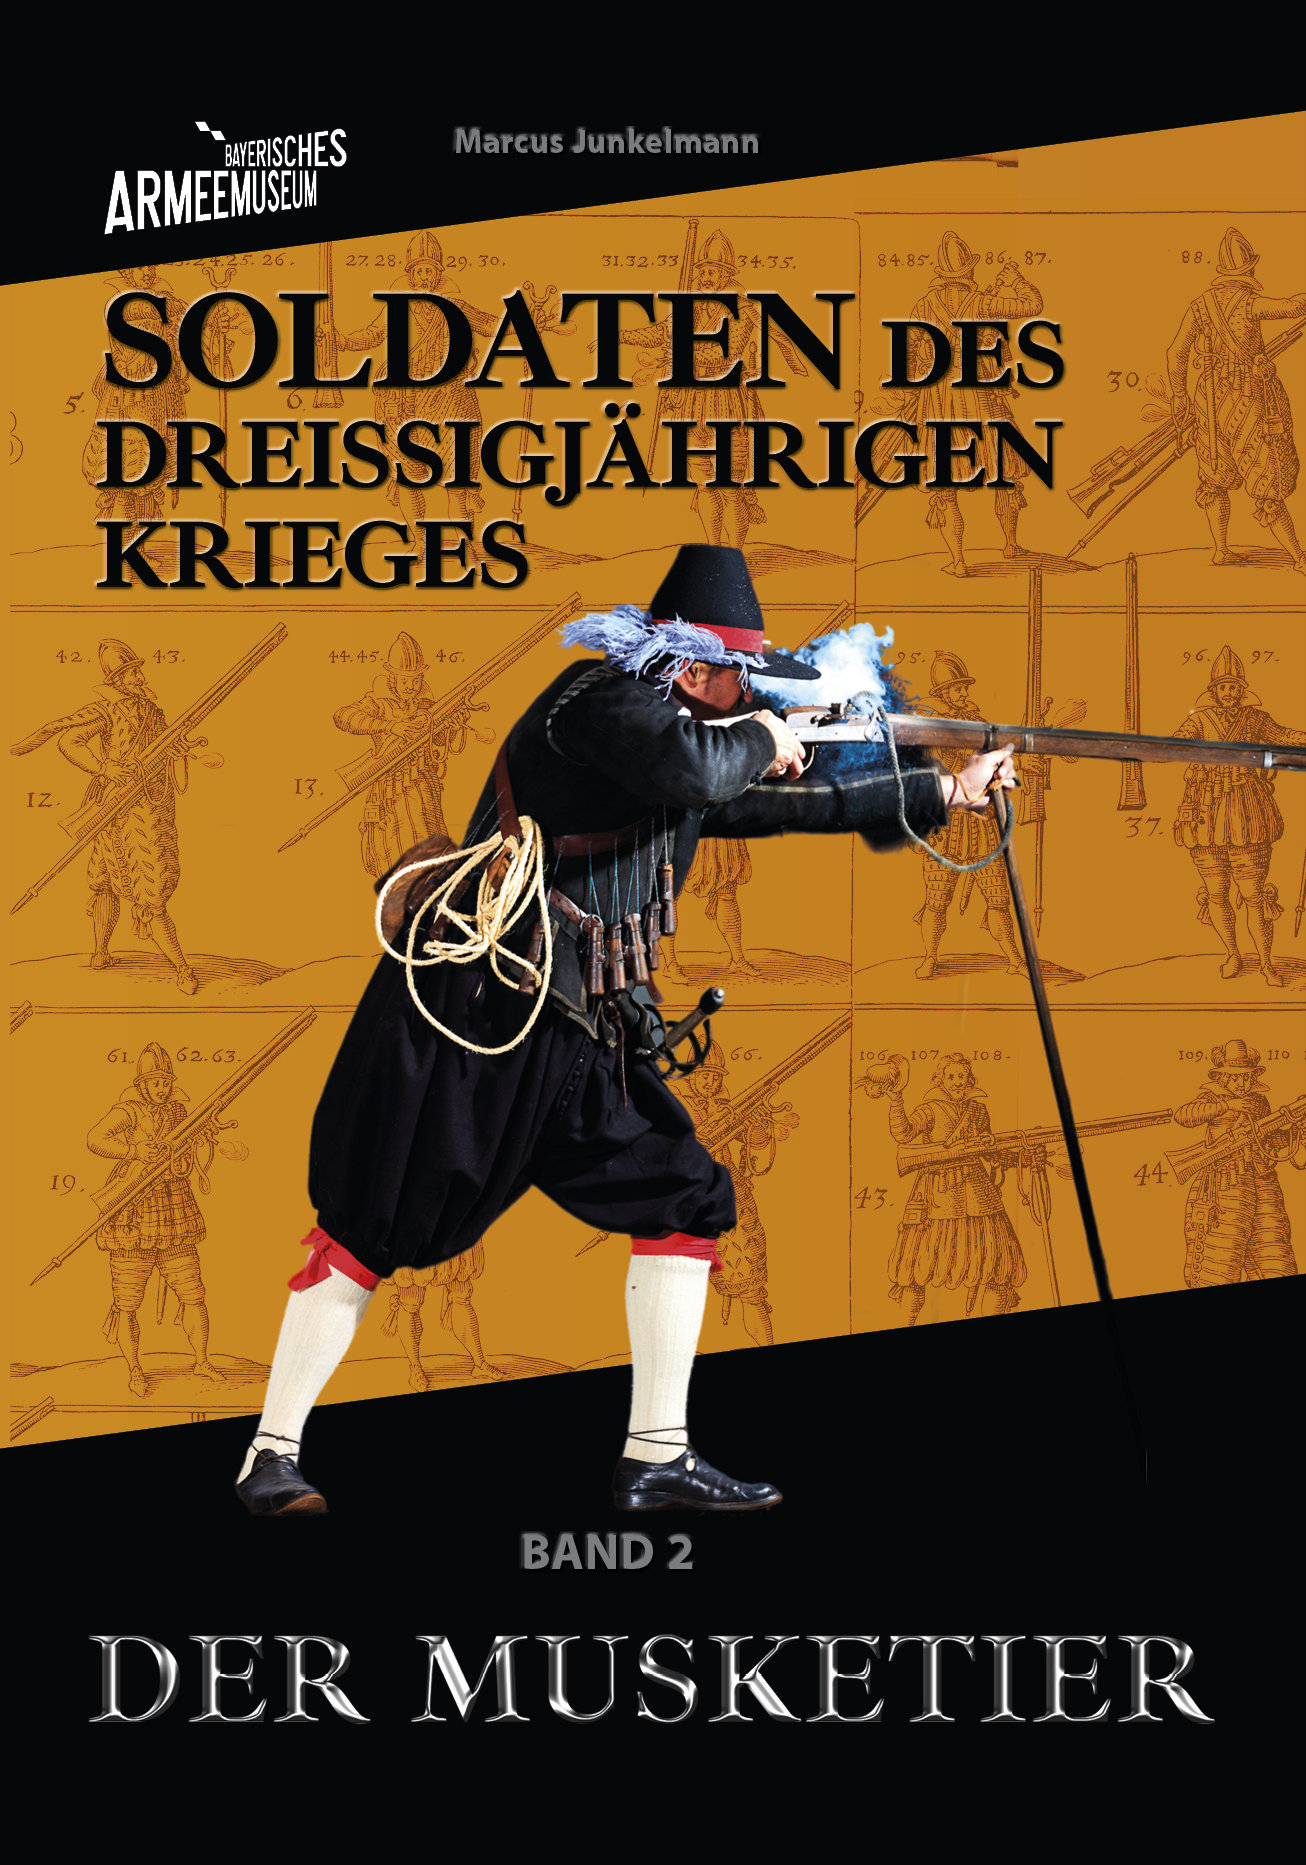 Marcus Junkelmann, Soldaten des Dreißigjährigen Krieges. Der Musketier © Bayerisches Armeemuseum / Verlagsdruckerei Schmidt